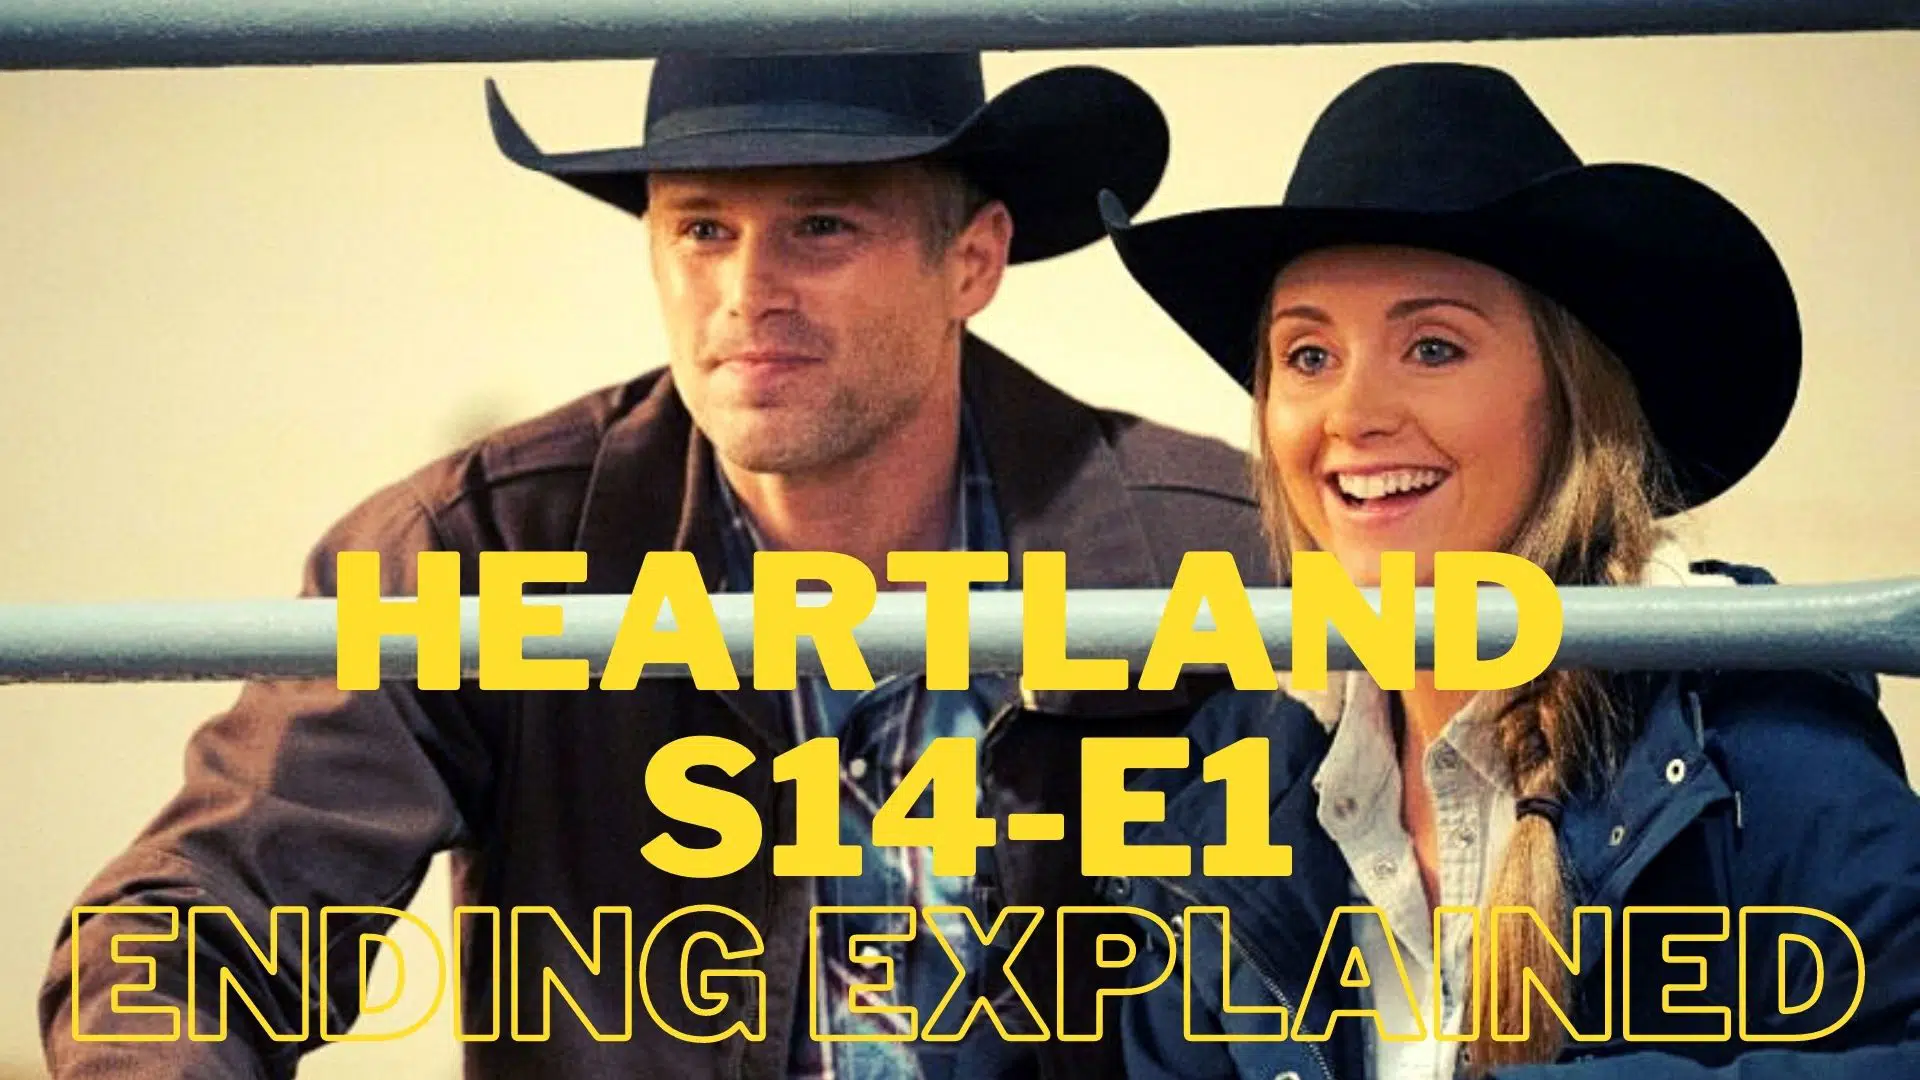 Heartland Season 14 Episode 1 Ending Explained